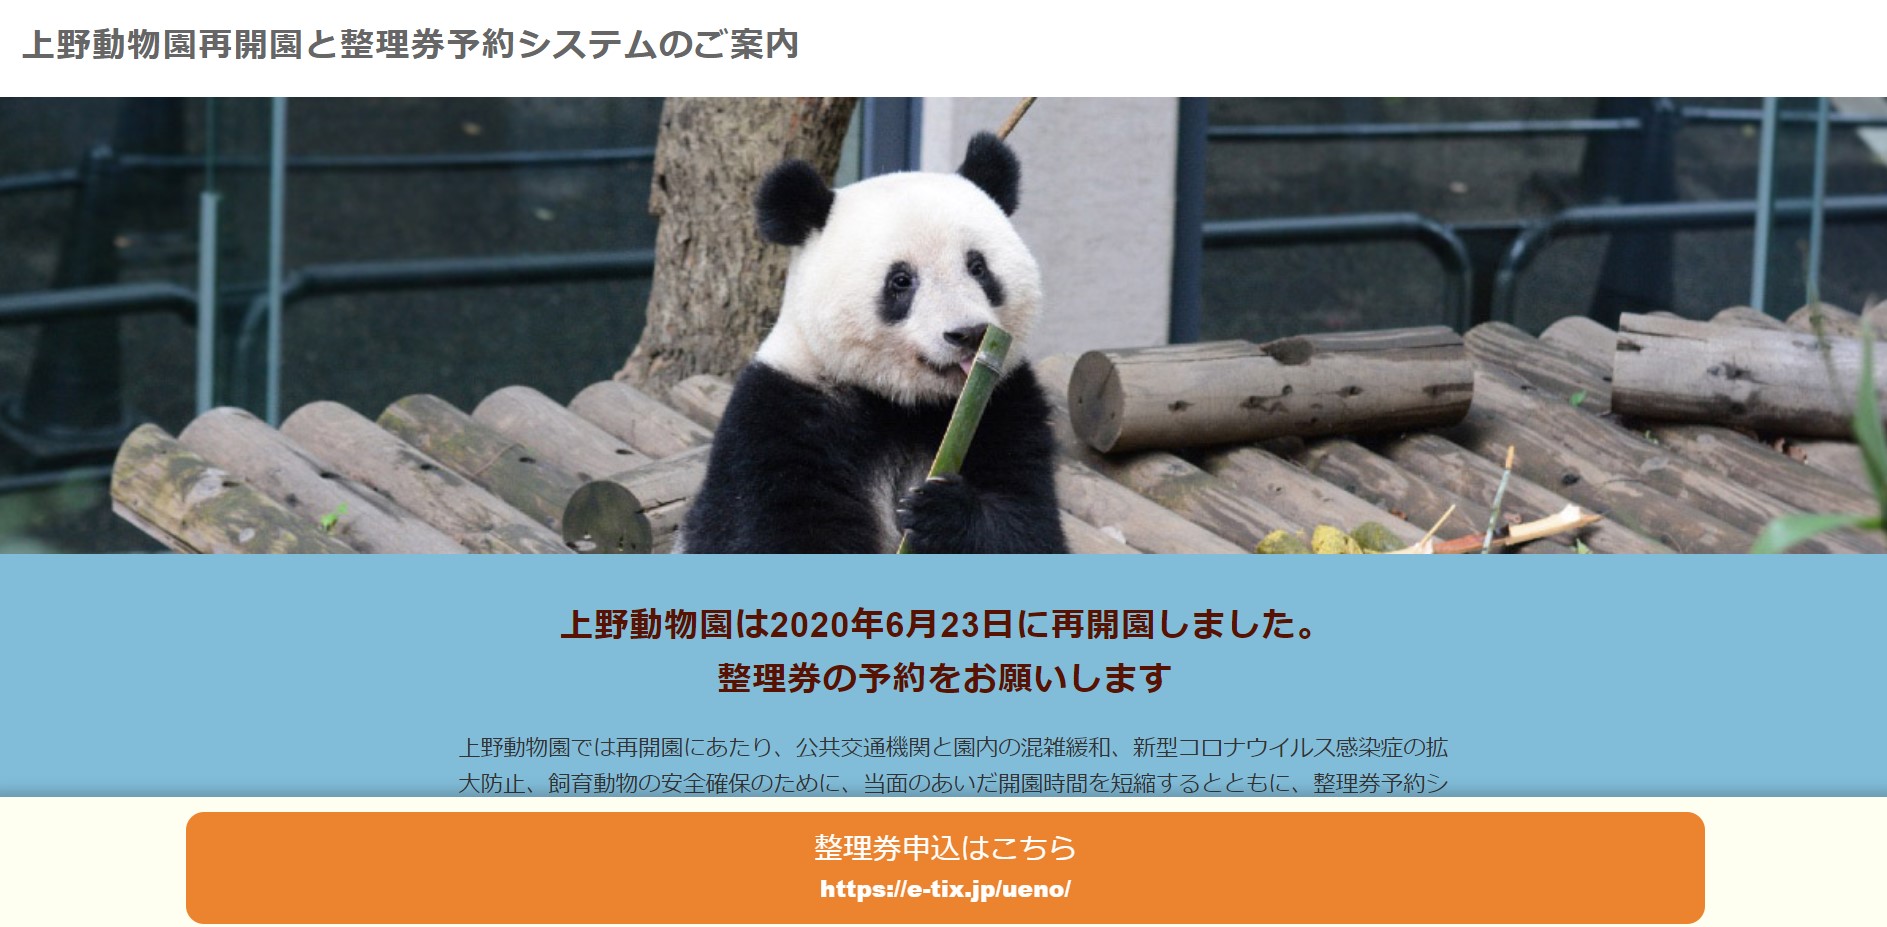 上野動物園が開園を再開 入園には 整理券の事前申し込み が必要なので要チェックしとこ Pouch ポーチ